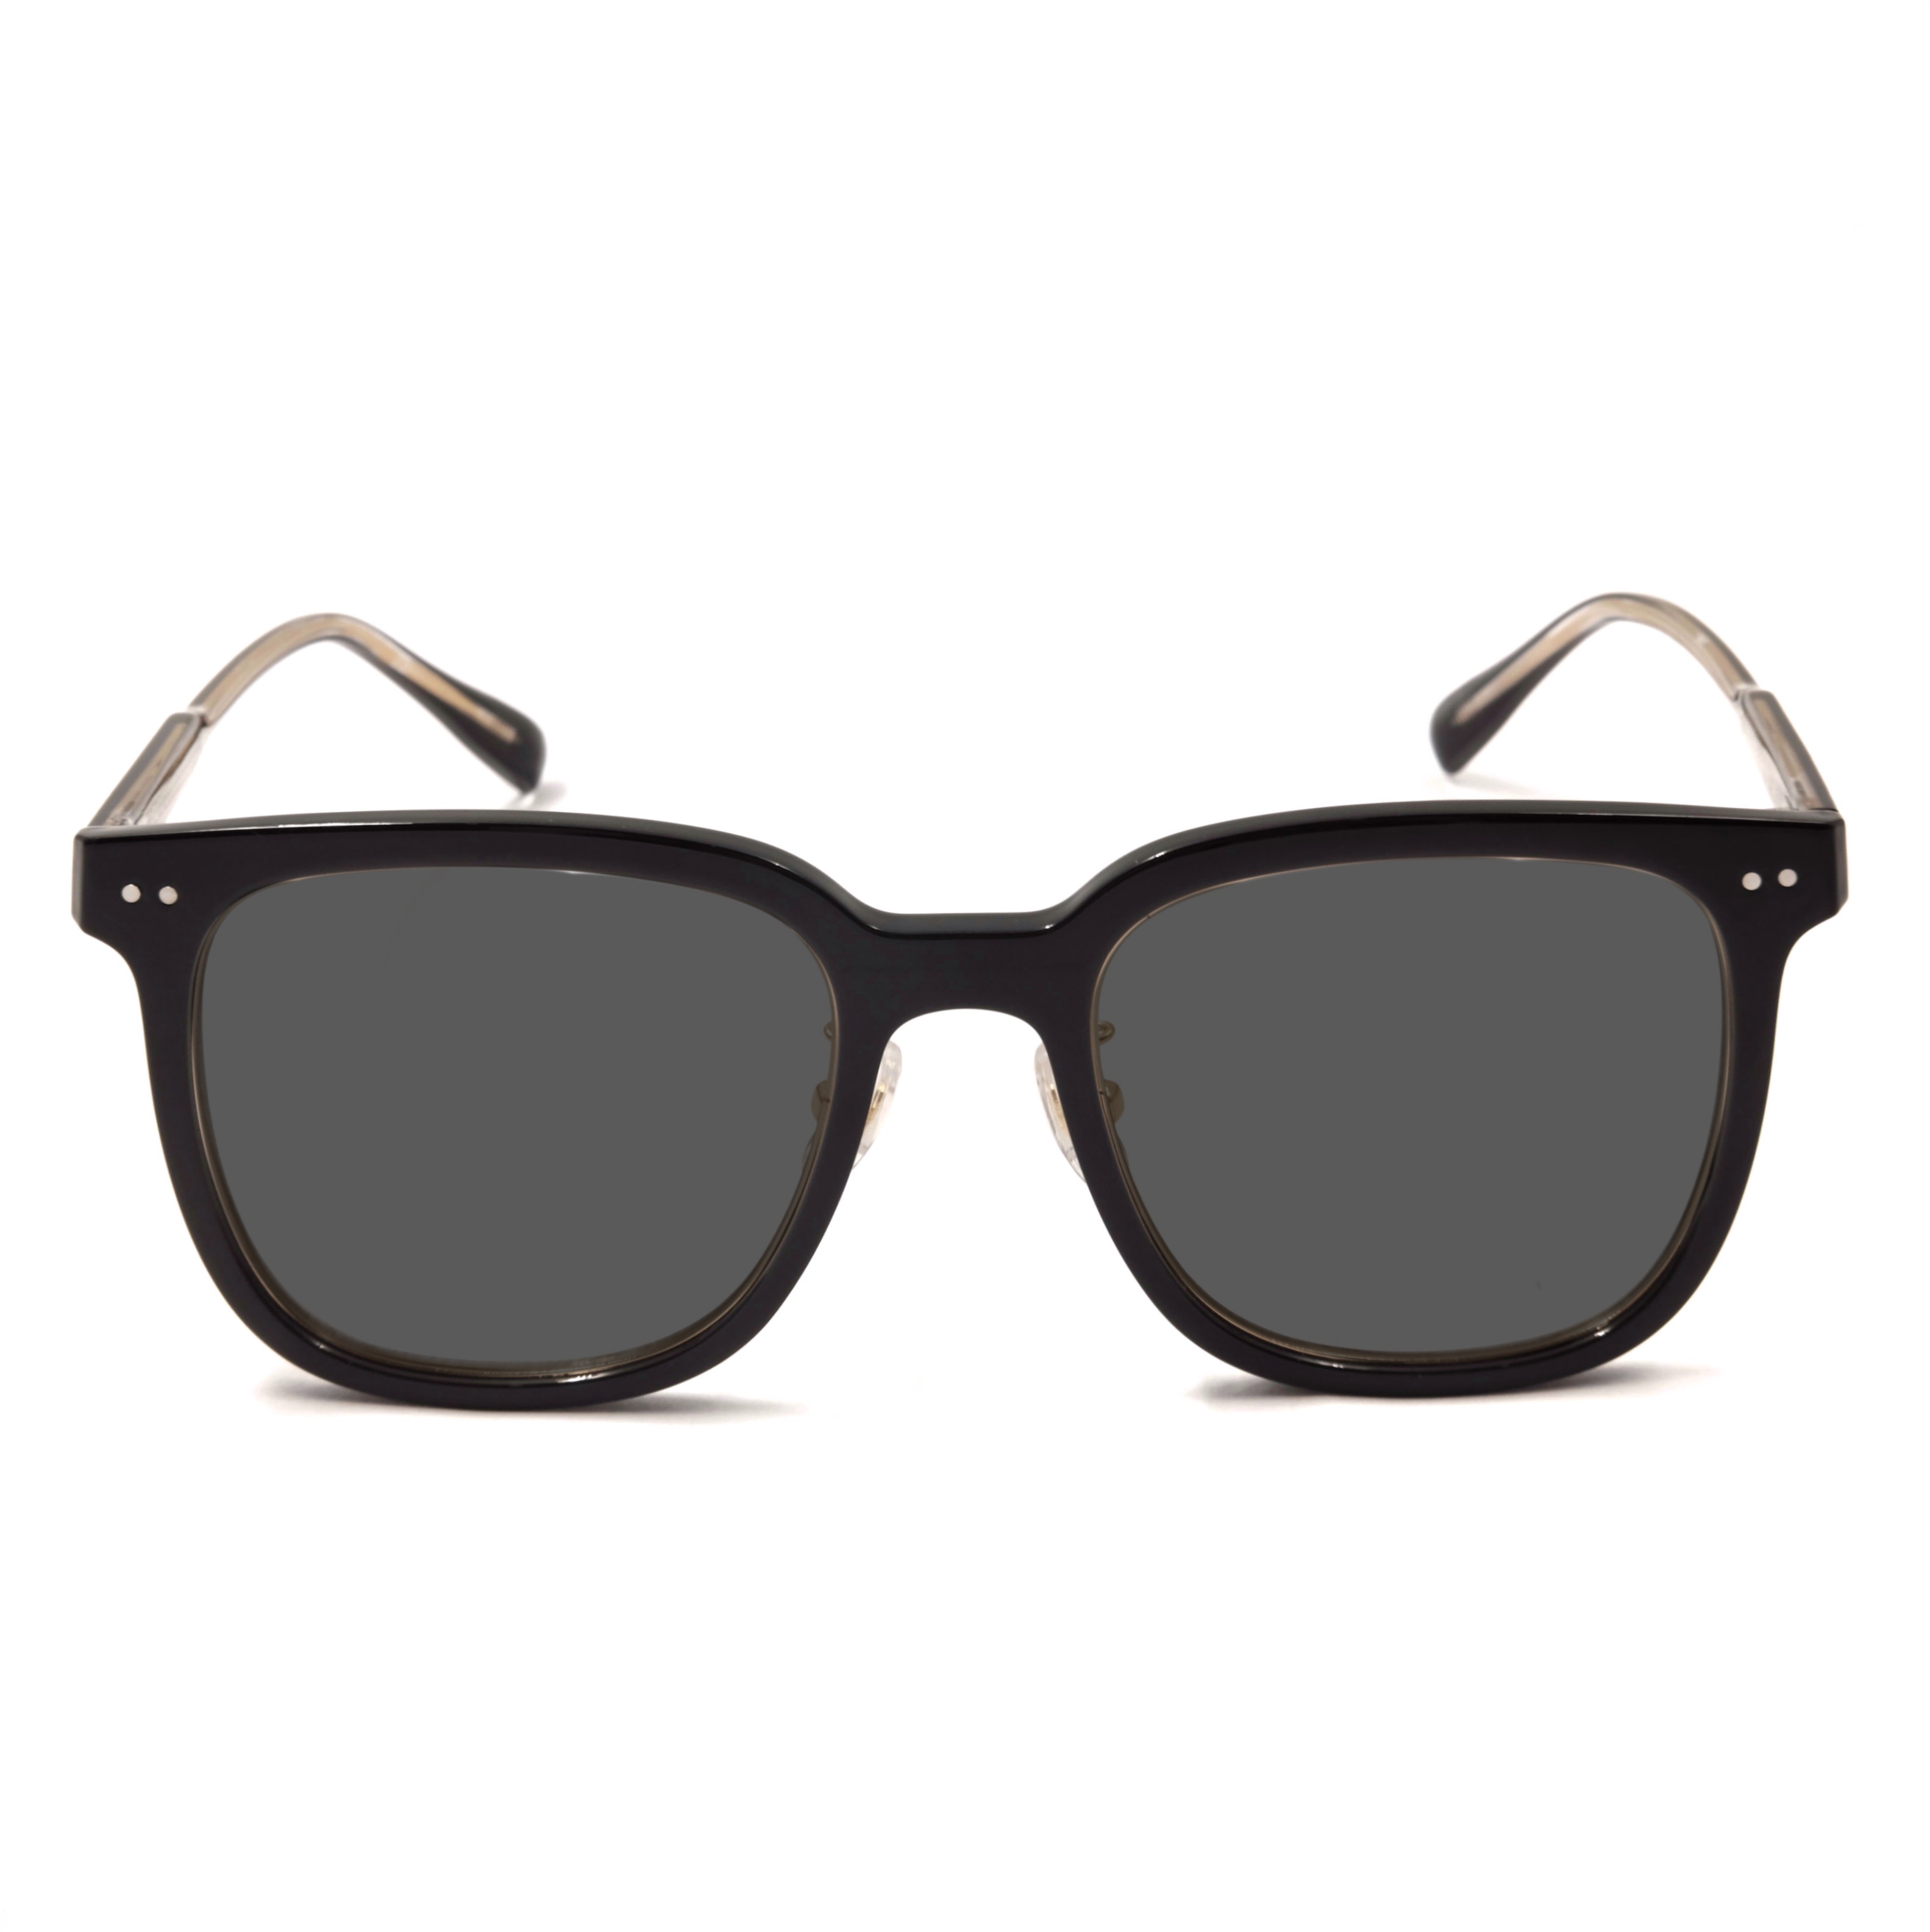 Gafas de sol de sombra cuadrada de acetato de oro negro clásico Fabricante de gafas de sol Gafas de sol de venta completa personalizadas